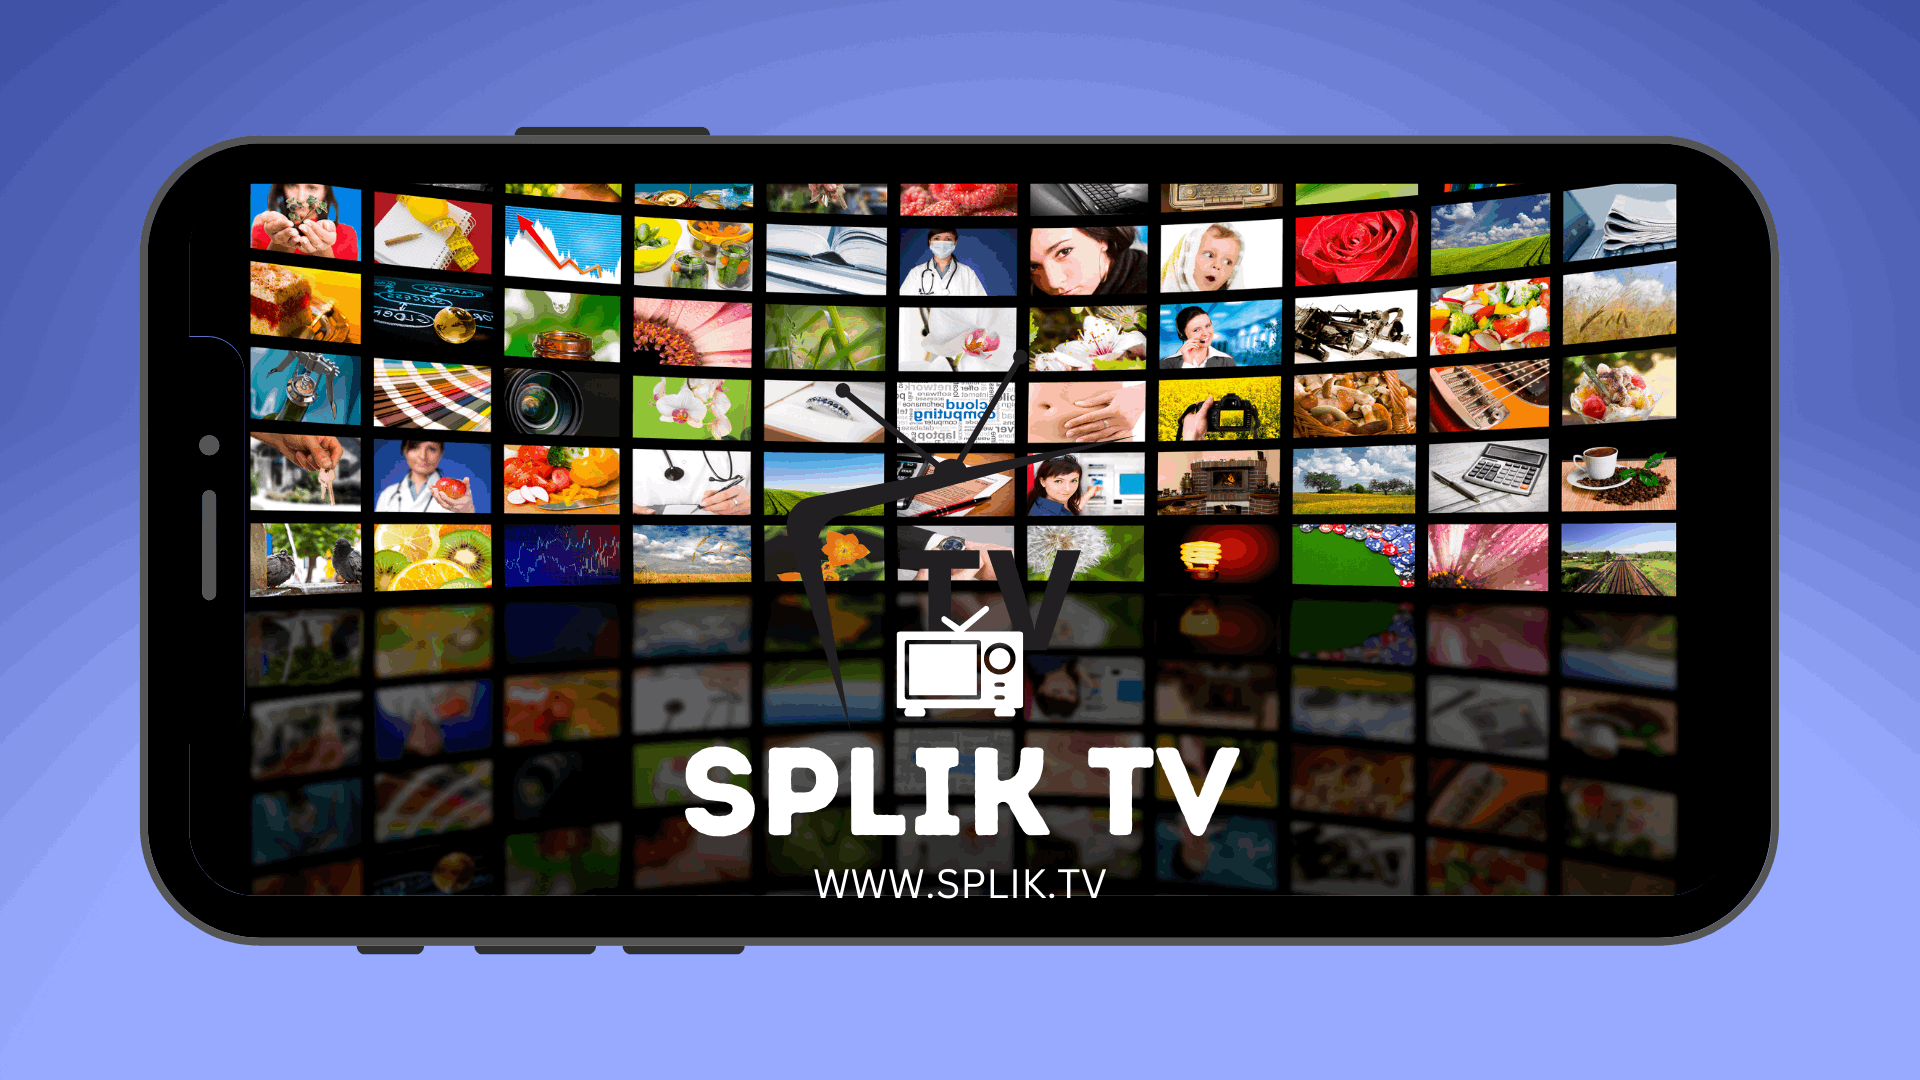 SplikTv - Watch Free and Favorite Shows Online